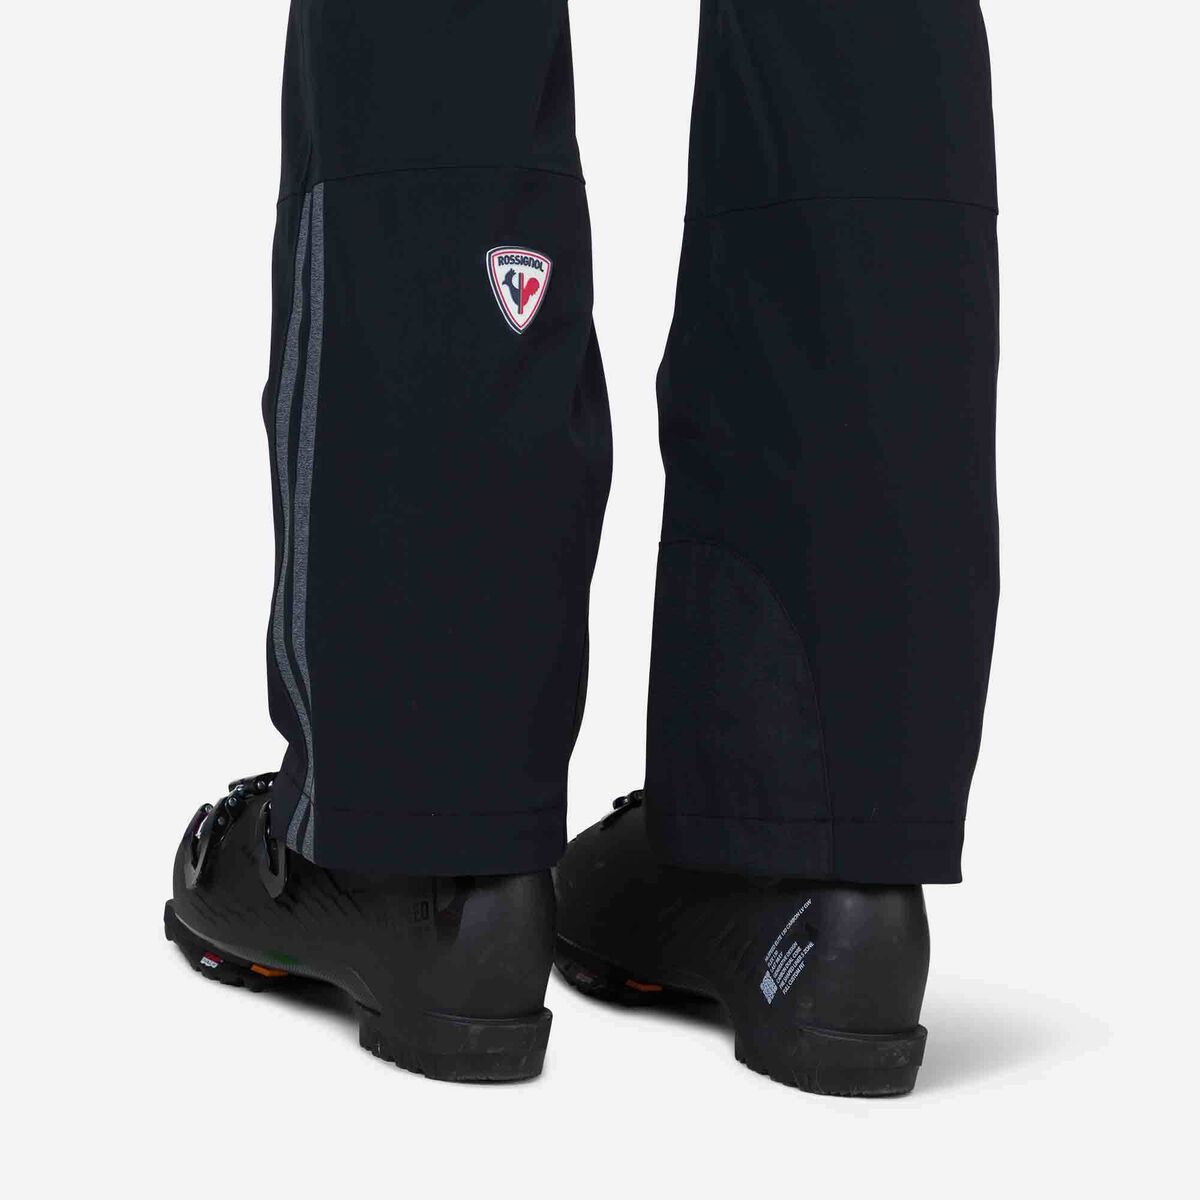 Rossignol Men's Strato Ski Pants black